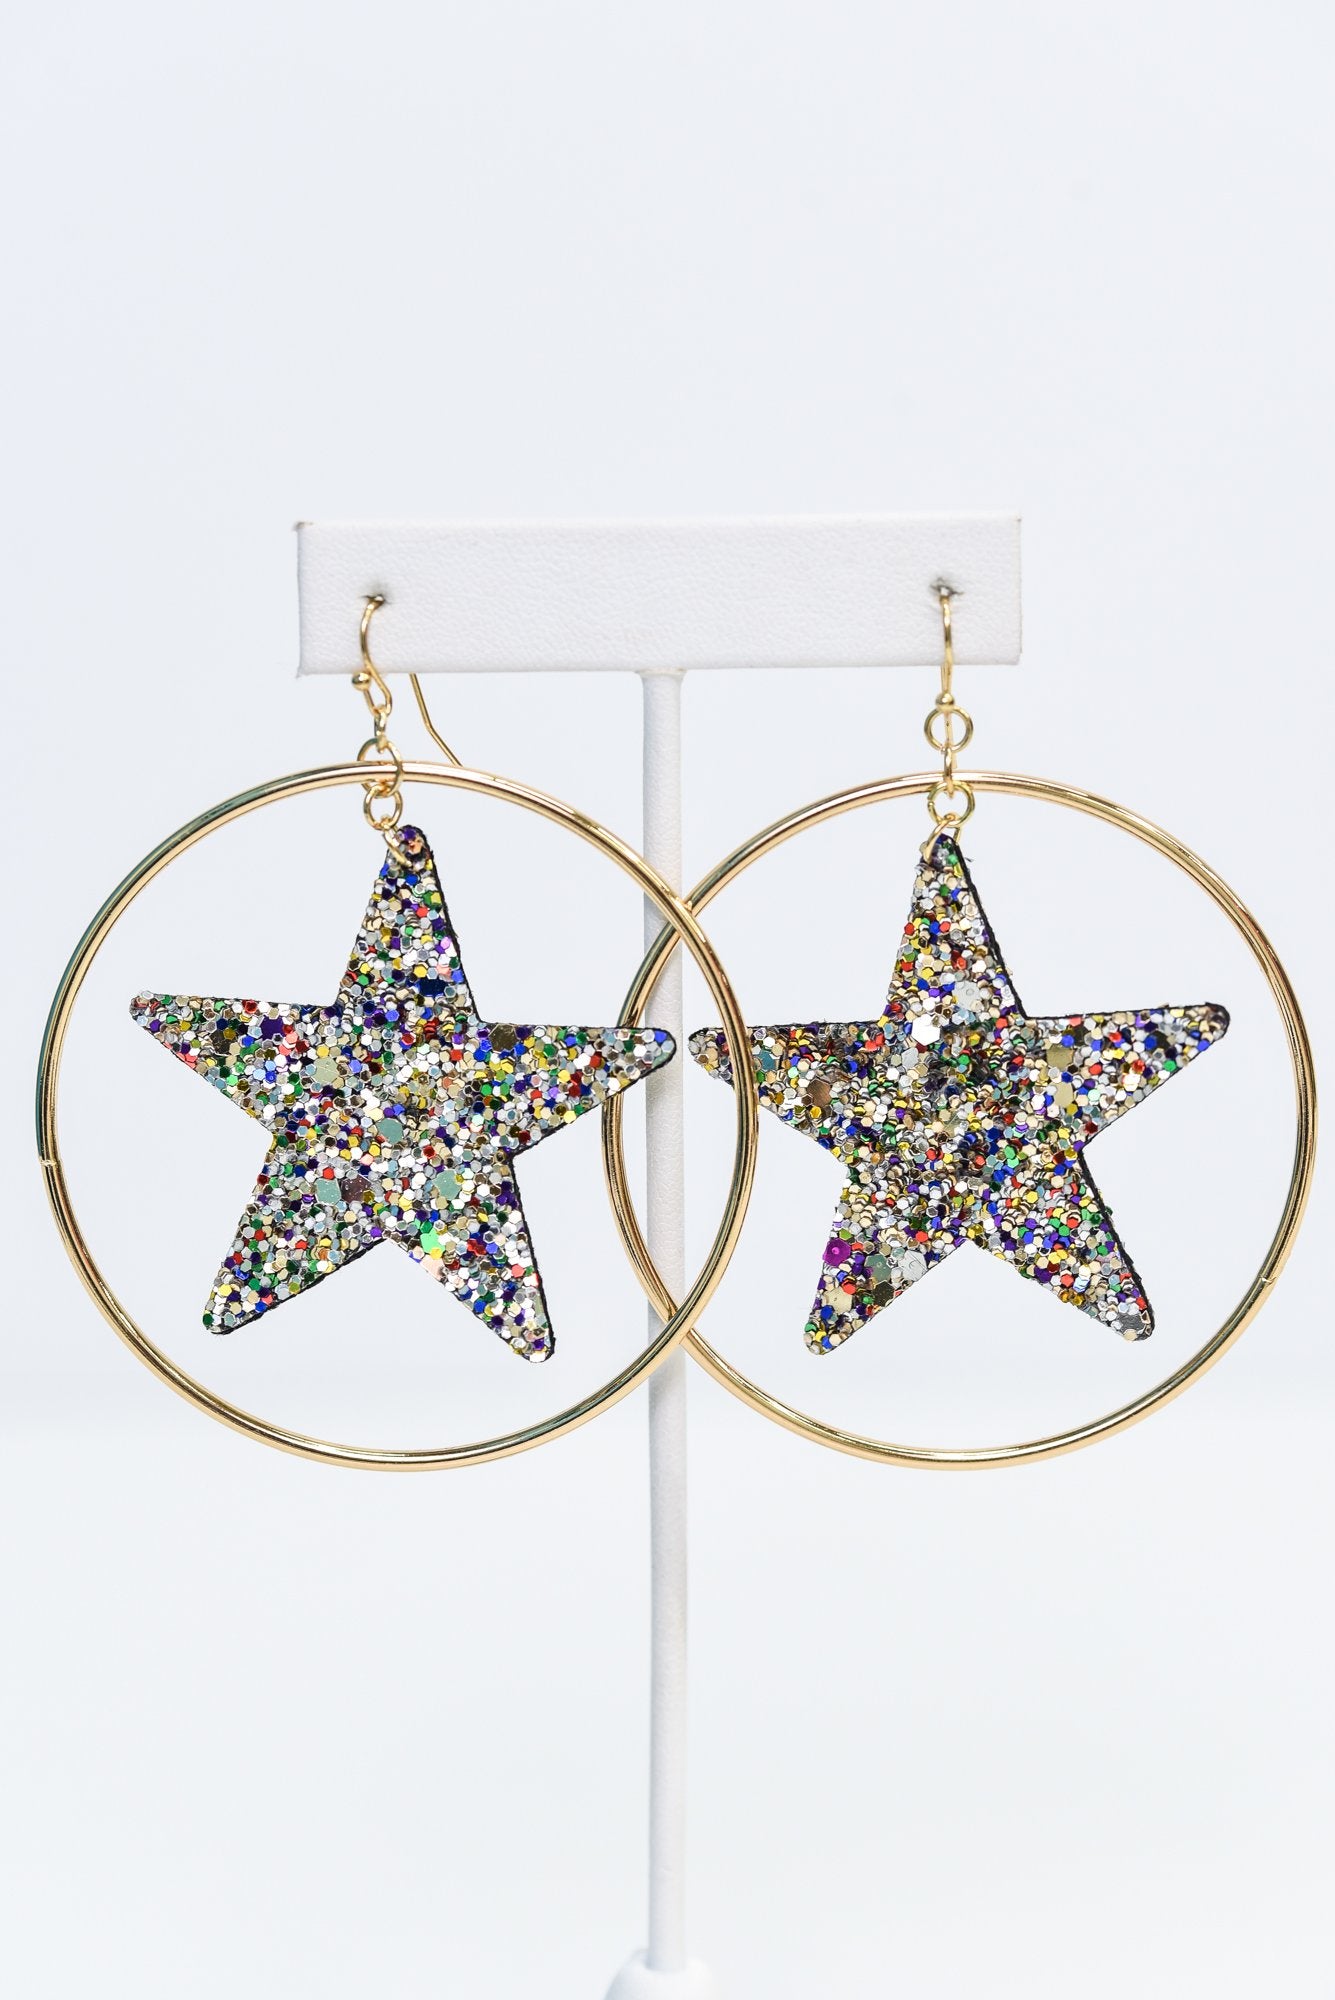 Silver/Multi Color Glitter Star Gold Hoop Earrings - EAR2954SI